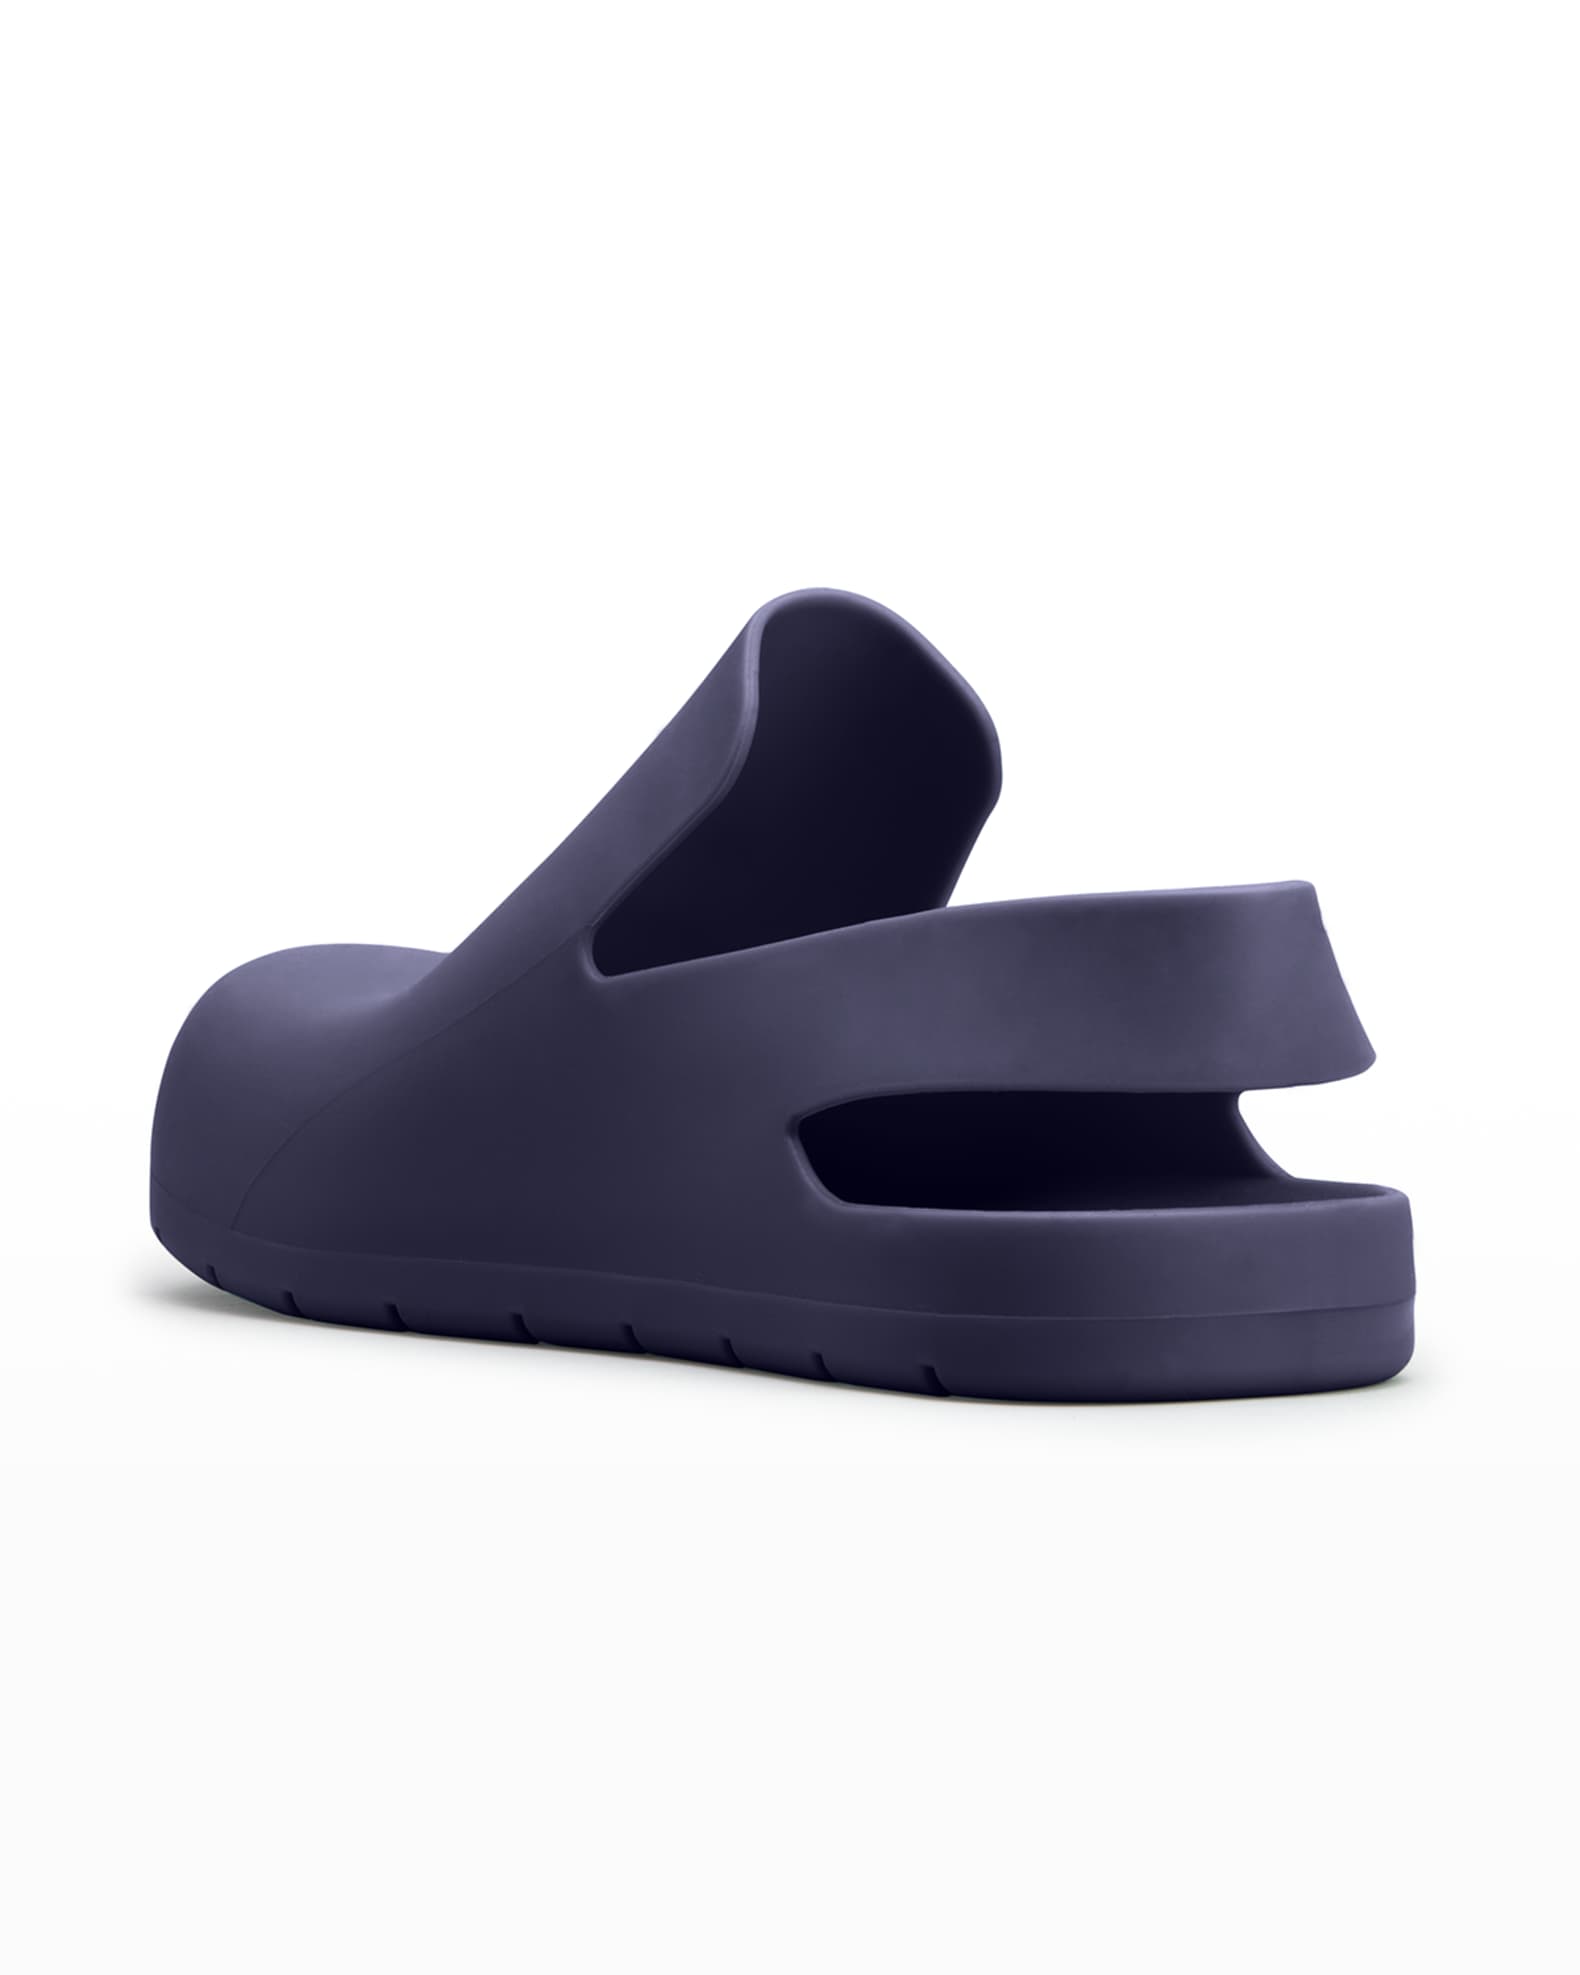 Bottega Veneta Men's Puddle Rubber Clog Sandals | Neiman Marcus